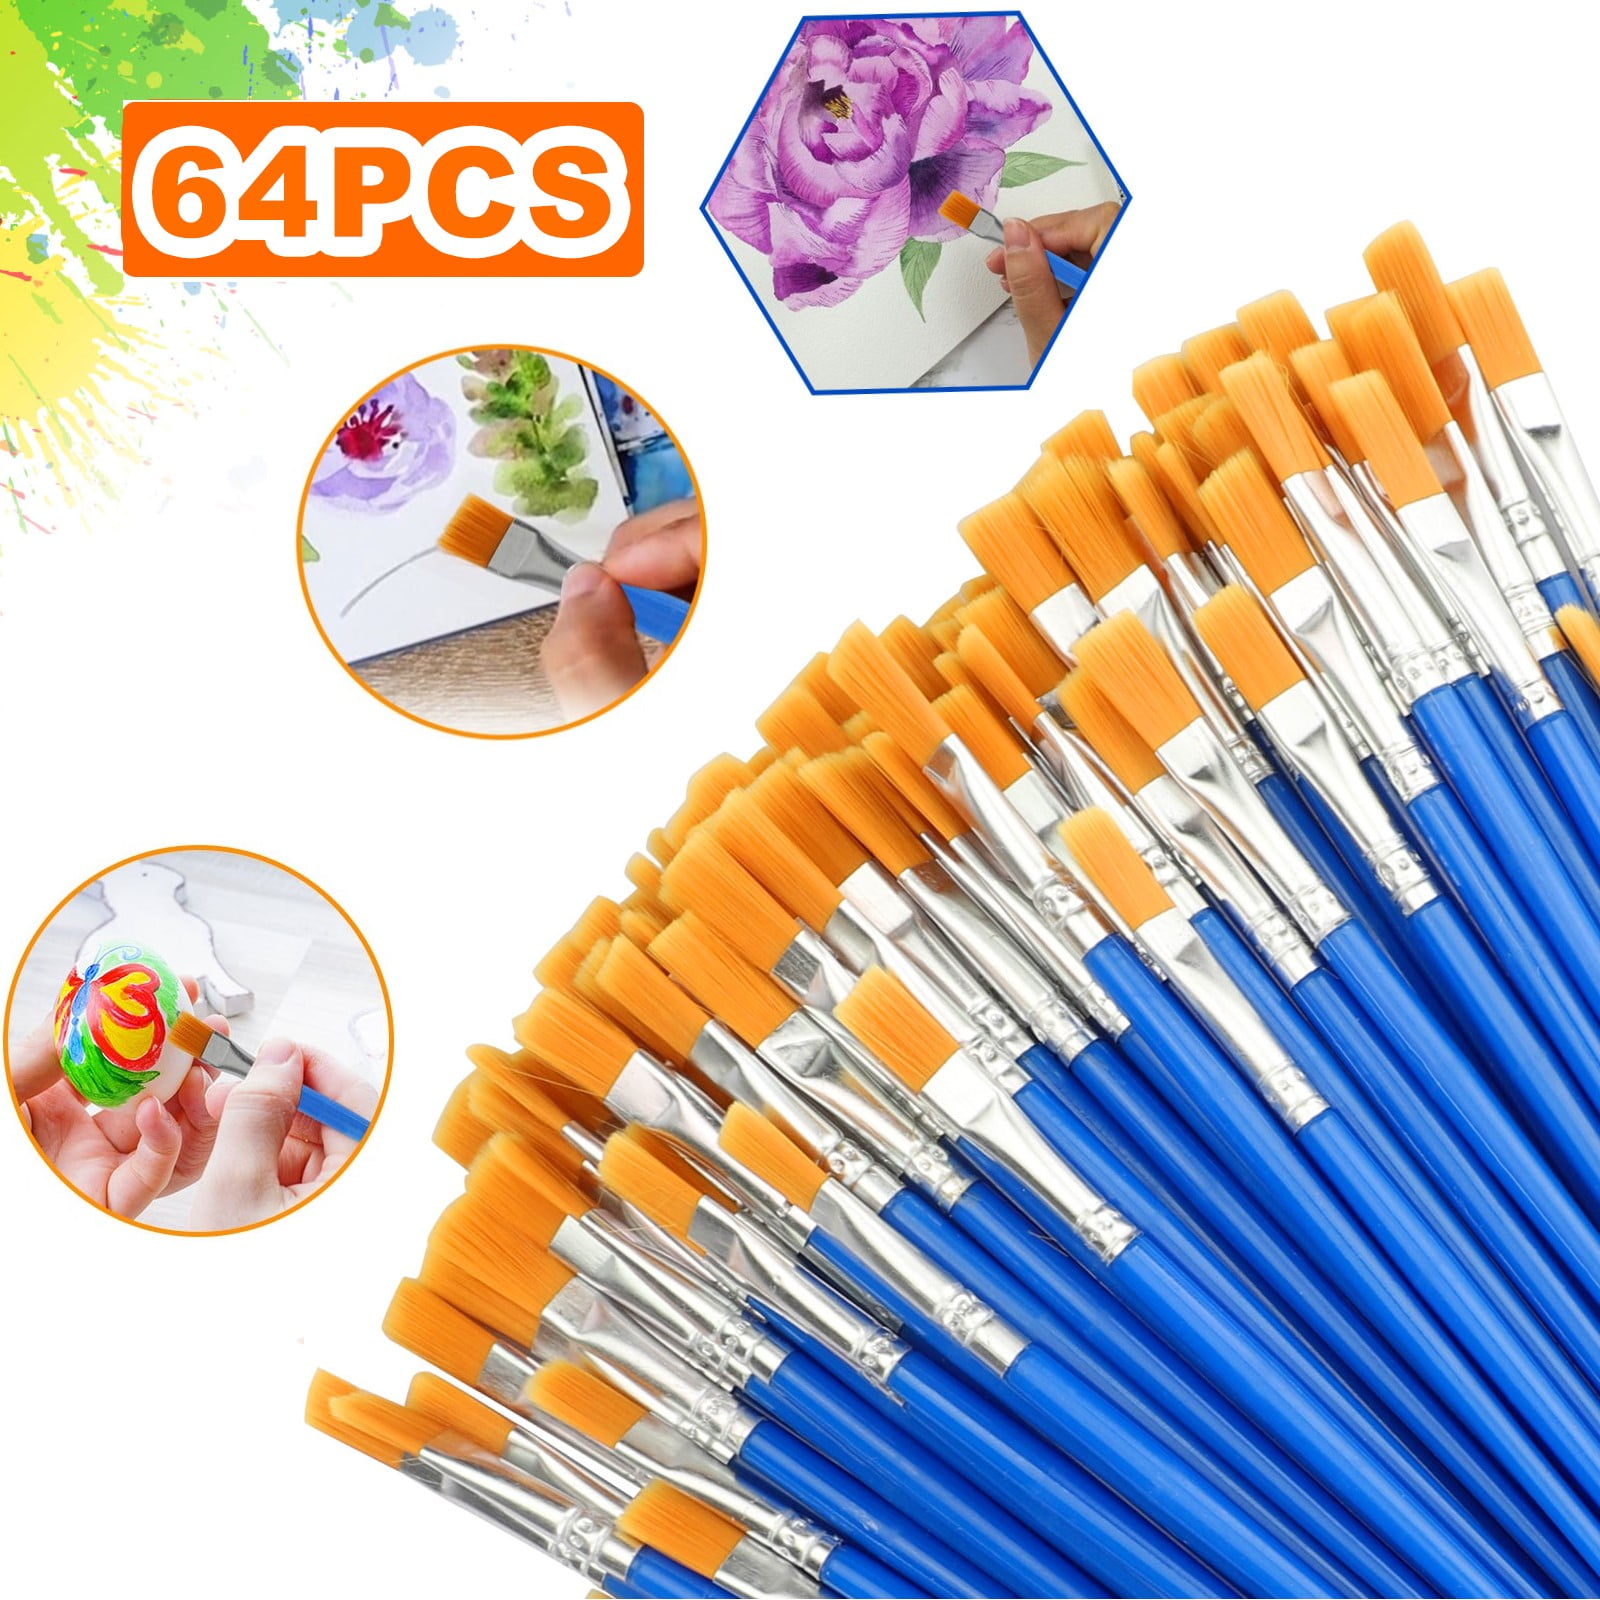 Acrylic Paint Set,64PCS Painting Supplies with 64pcs 36colors Kit